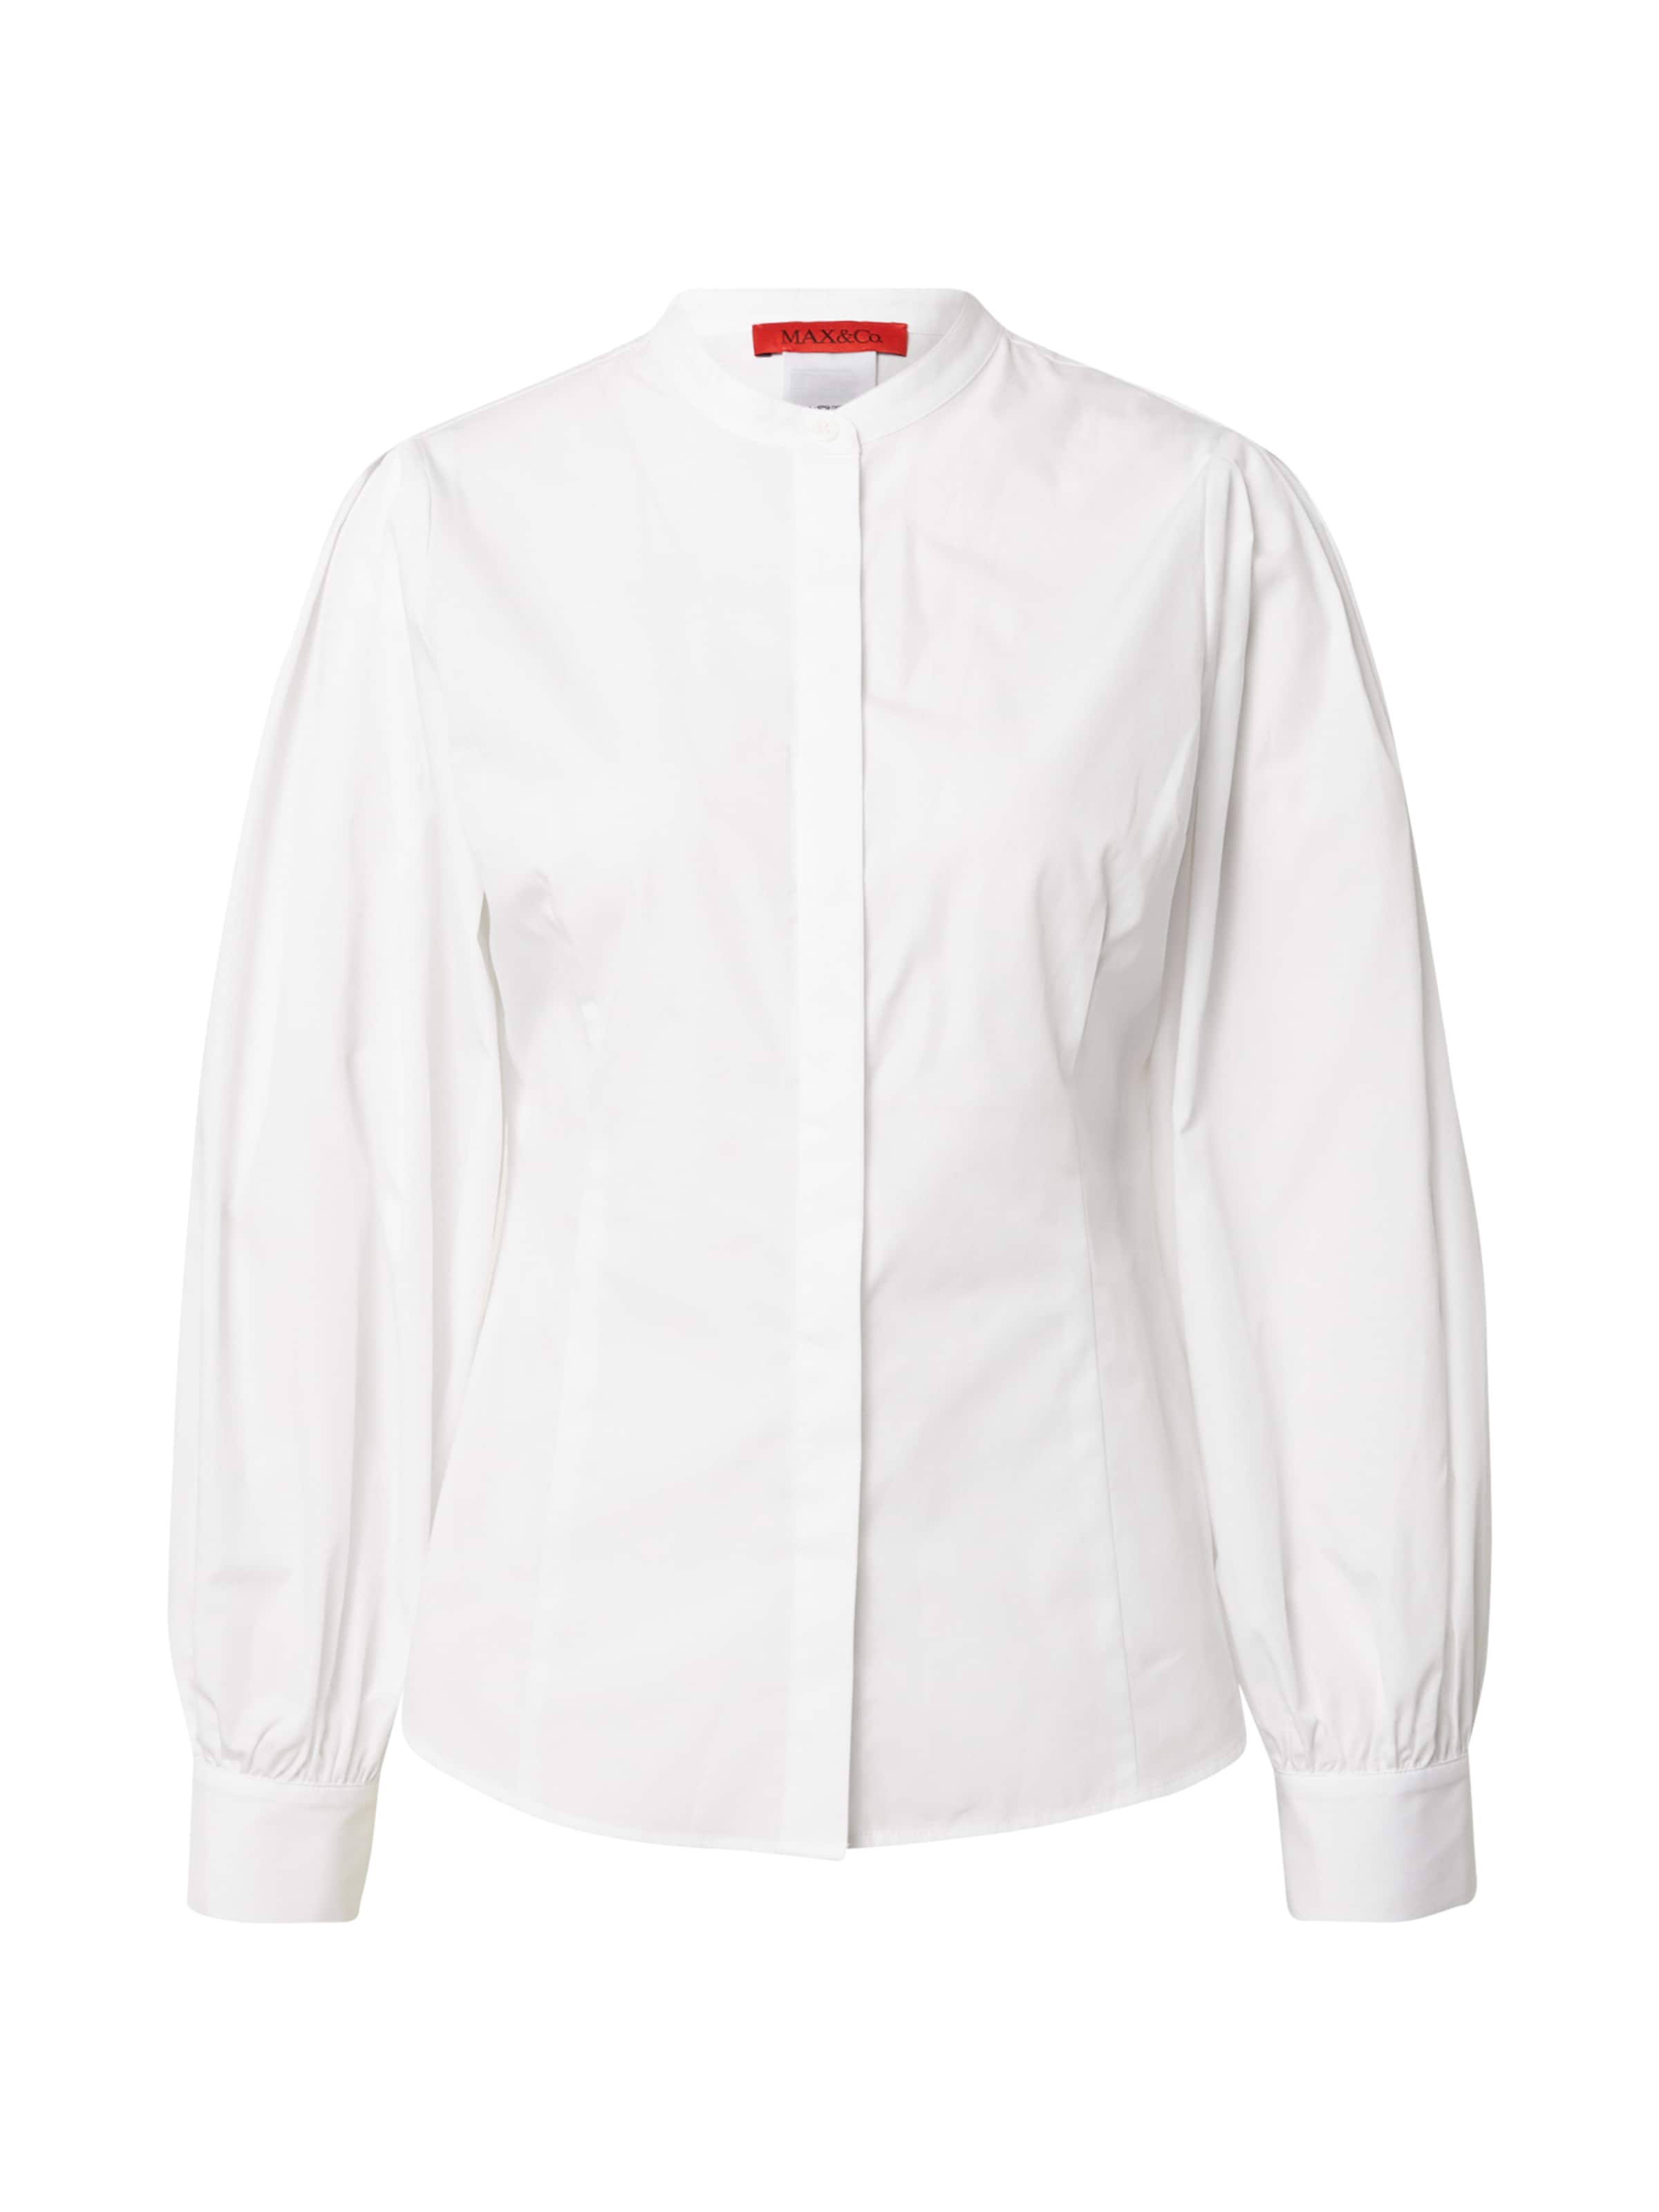 Abbigliamento Donna MAX&Co. Camicia da donna DIALOGO in Bianco 